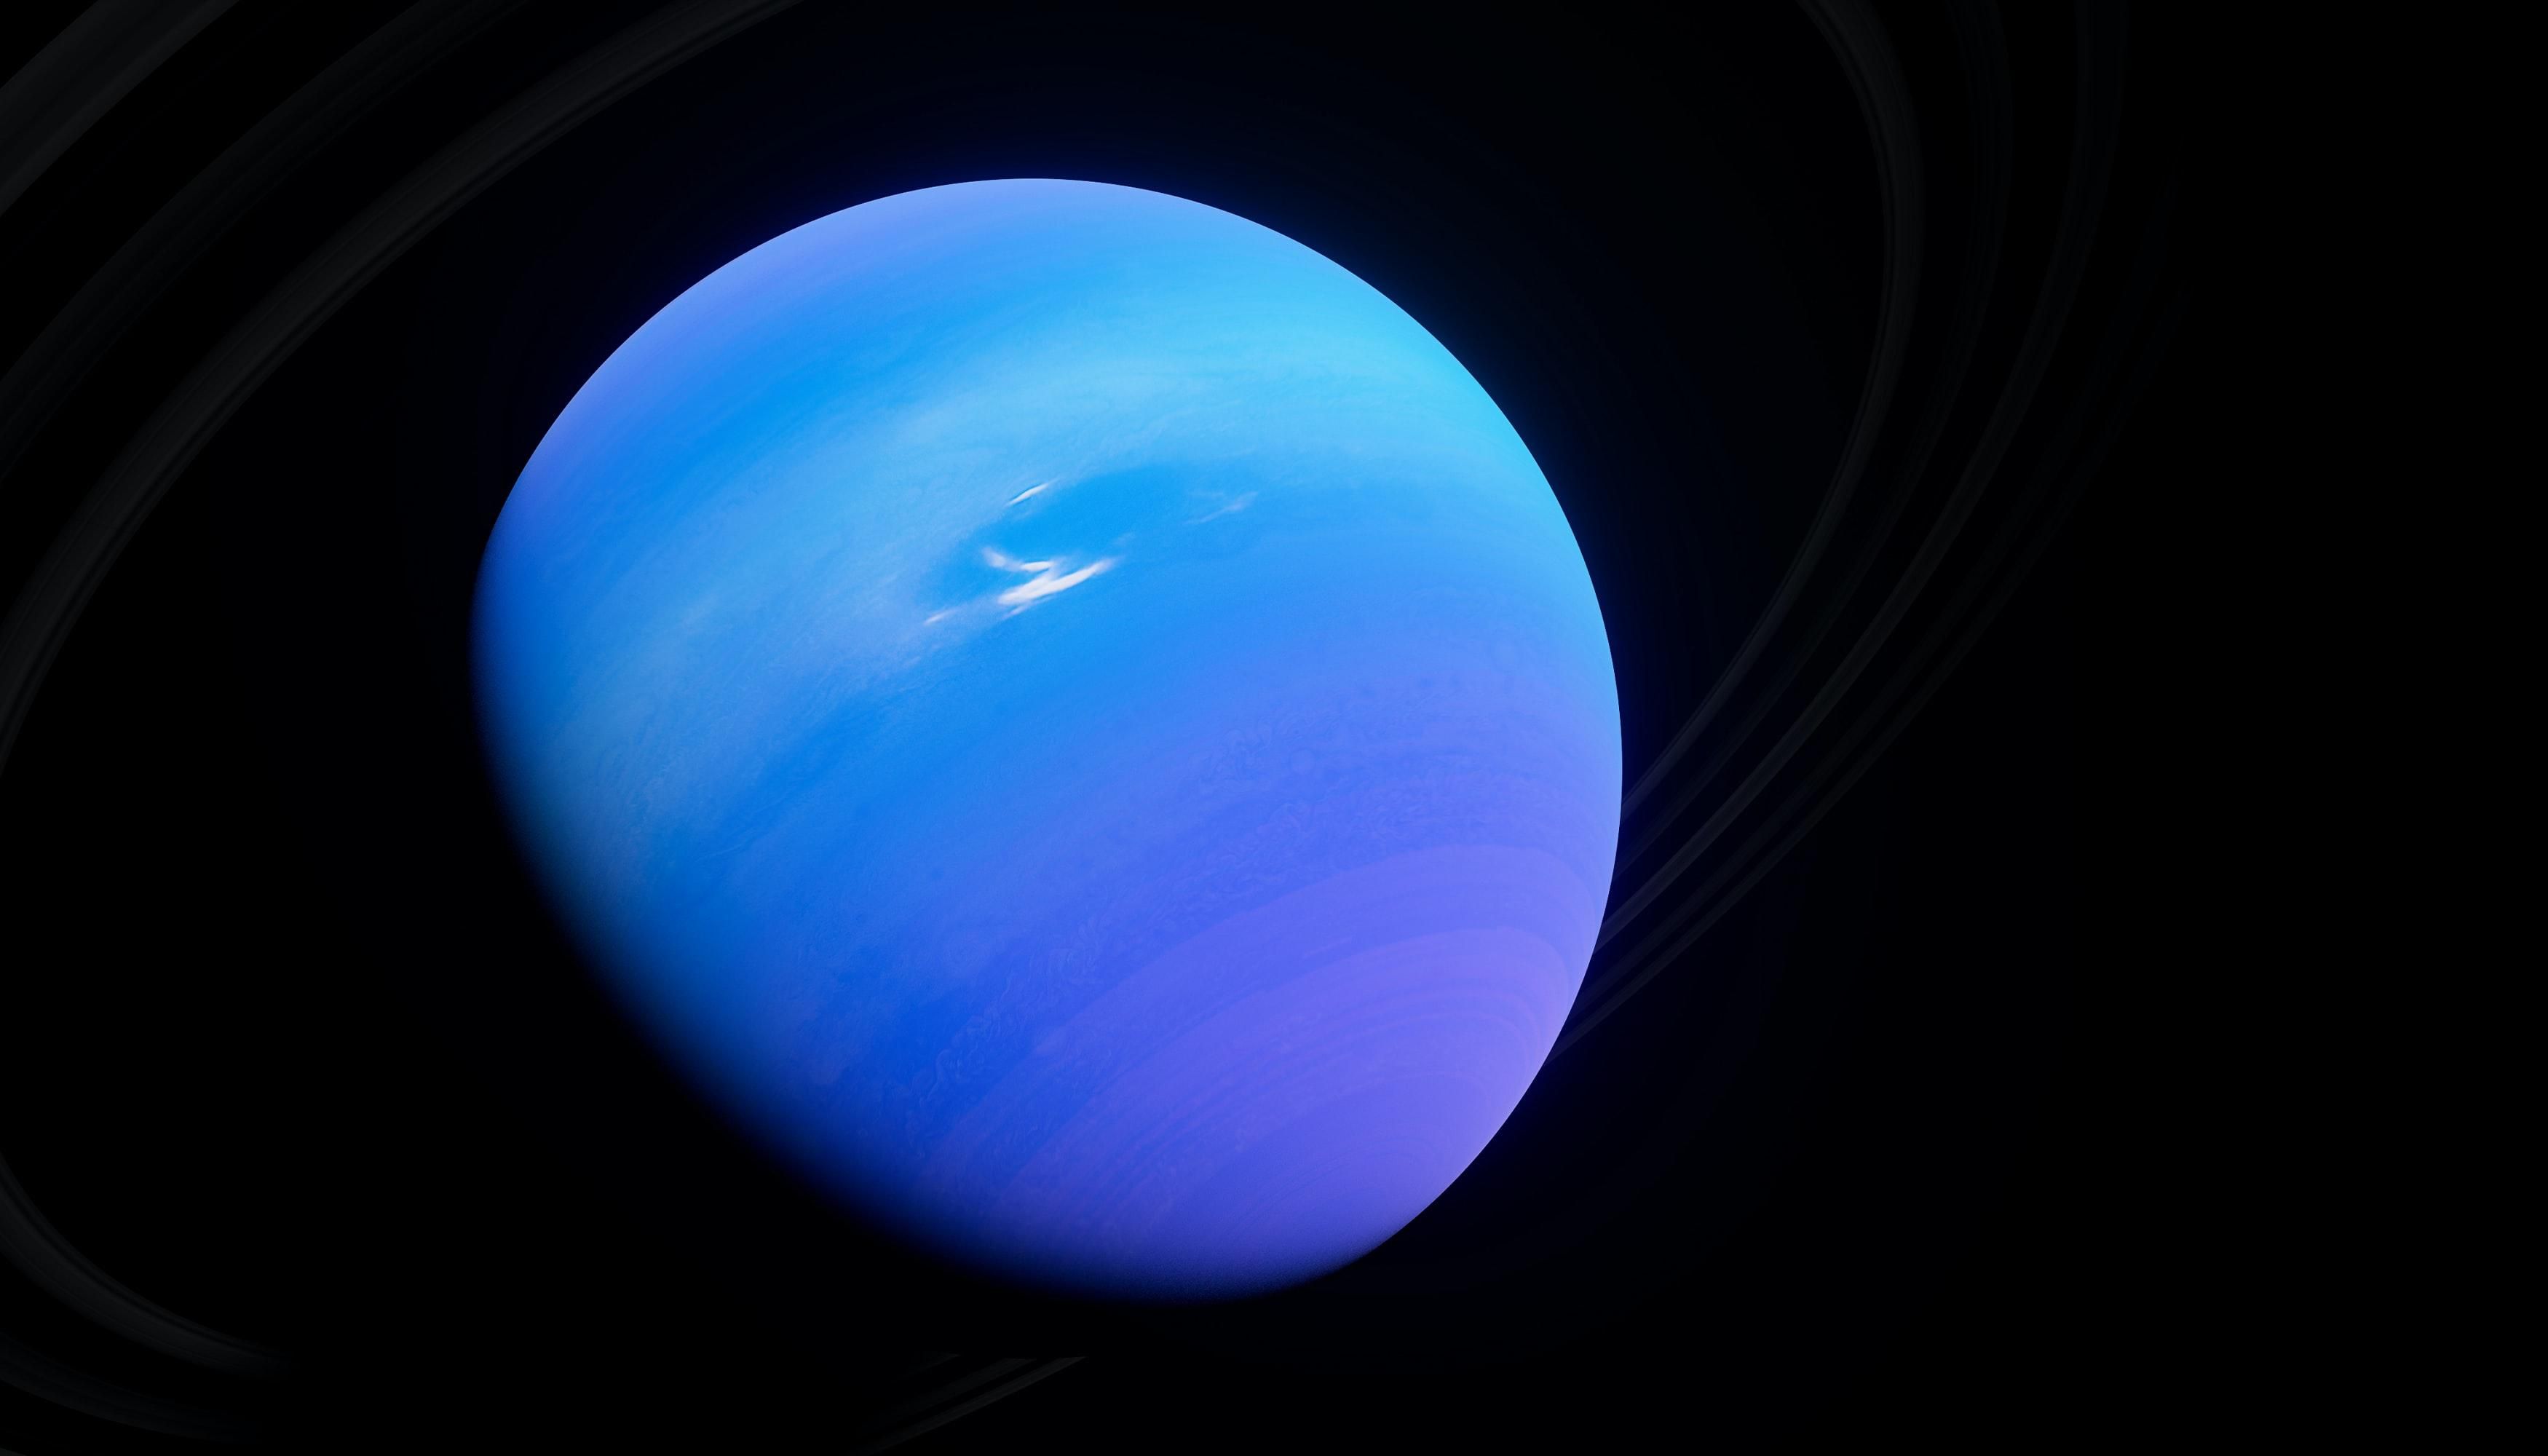 Planetary Volumes Neptune